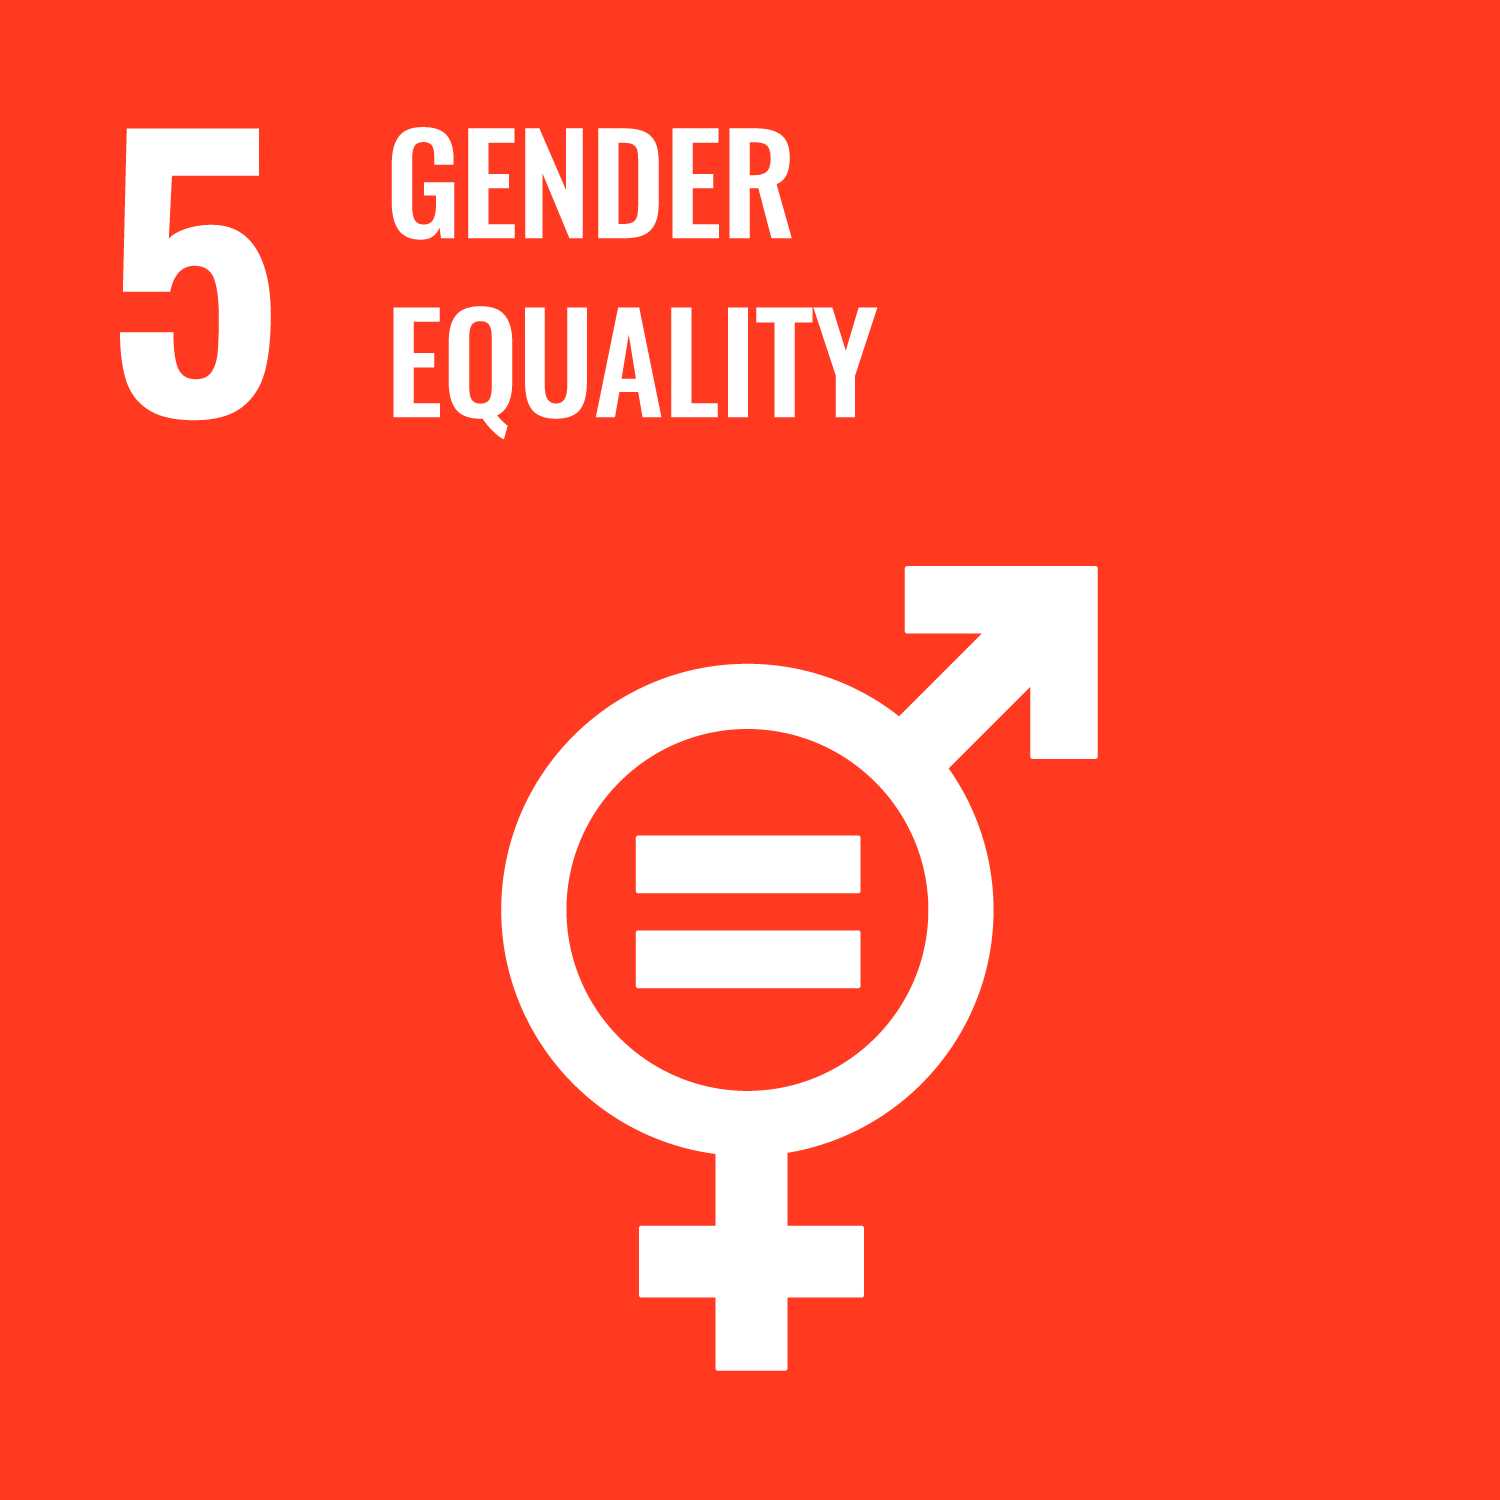 Target 5．Gender equality